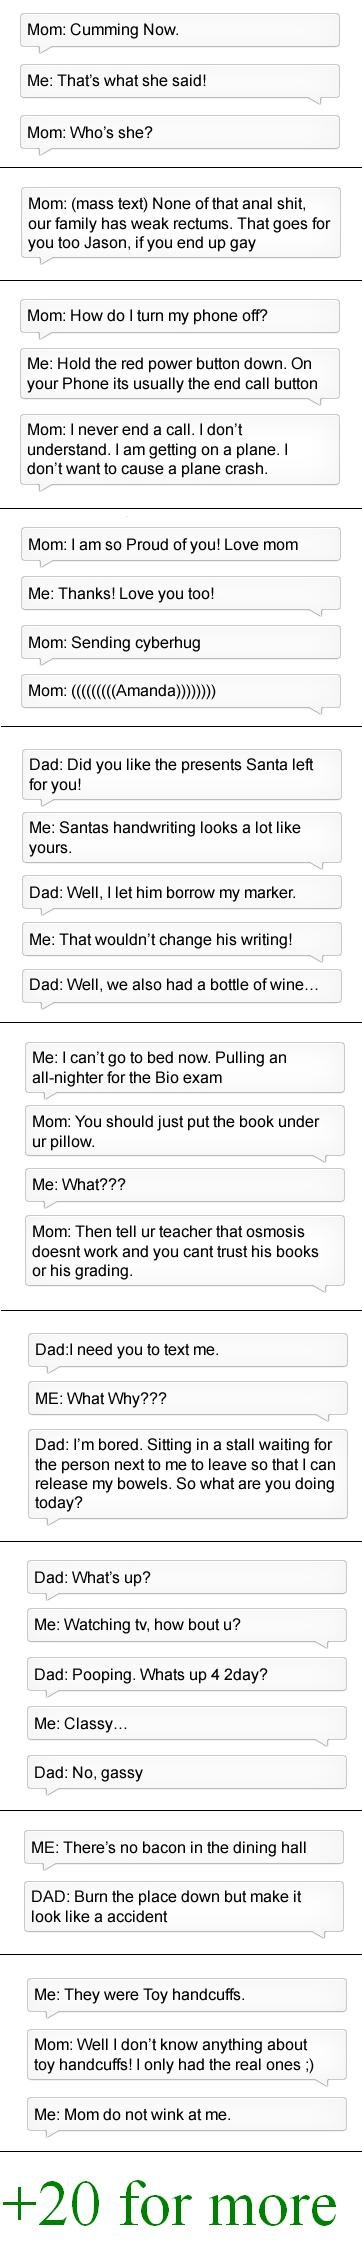 What Parents Text